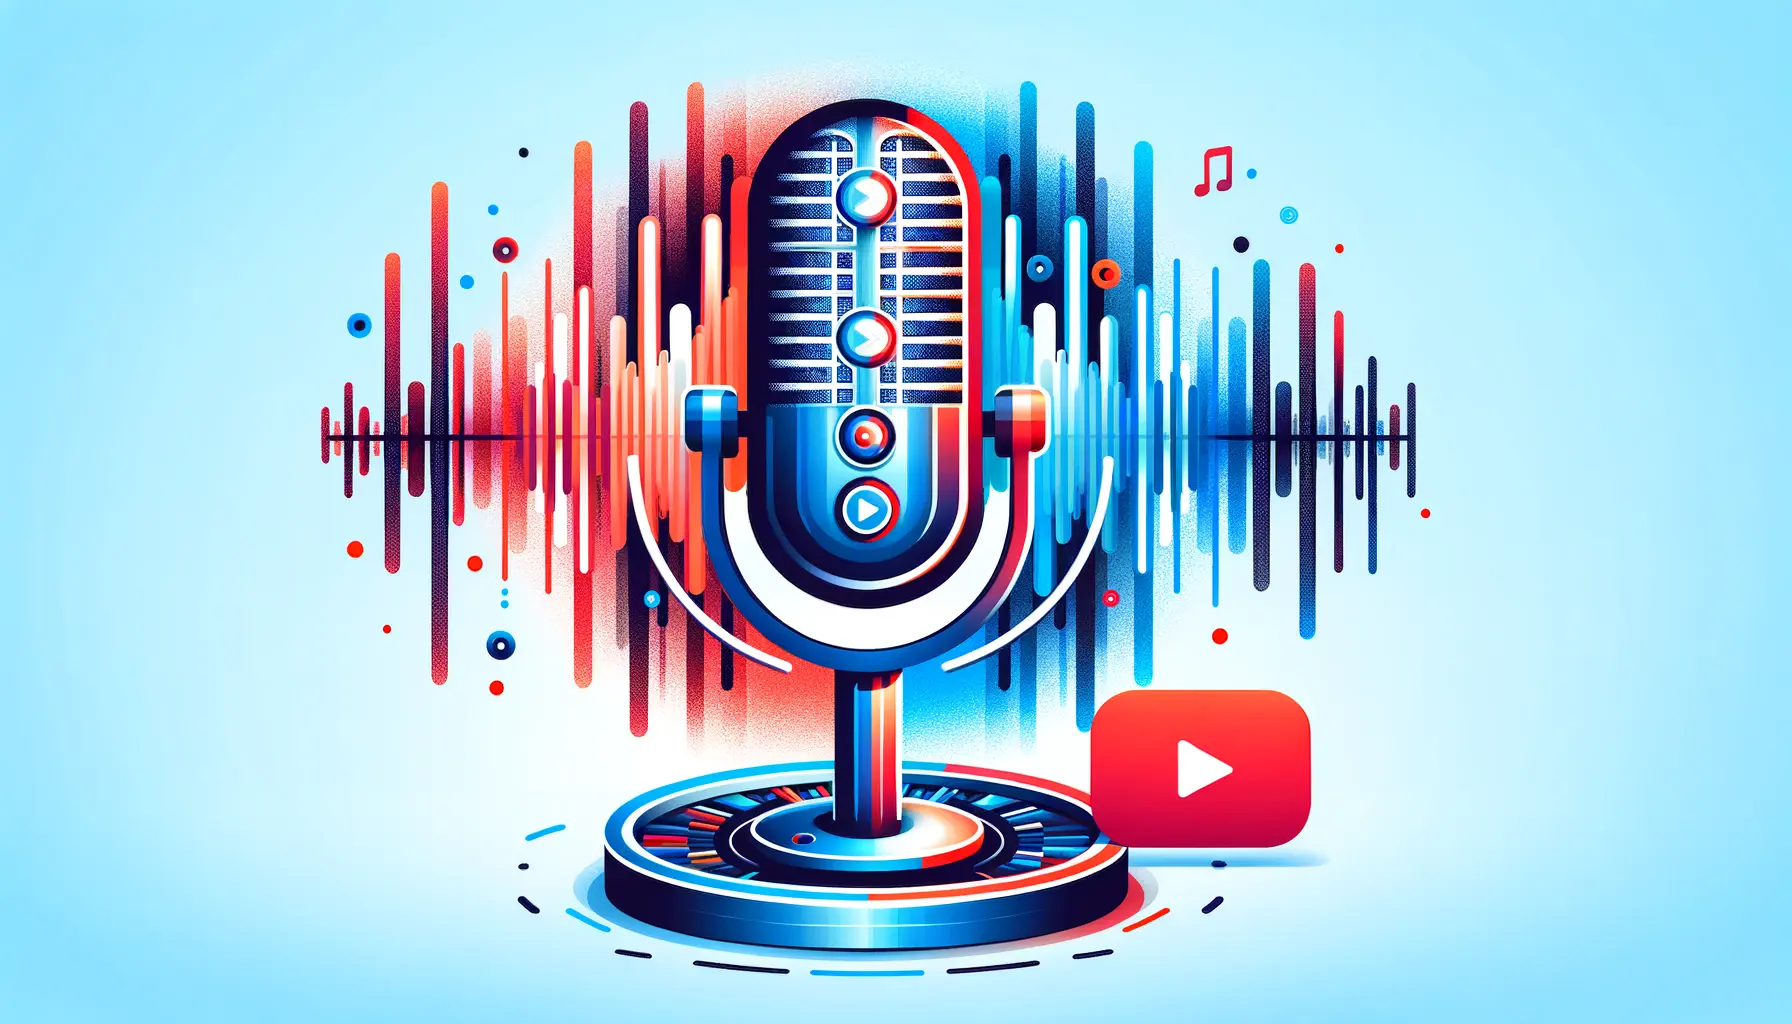 Ses Optimizasyonu: Youtube Videolarında Ses Kalitesini Artırma Yöntemleri